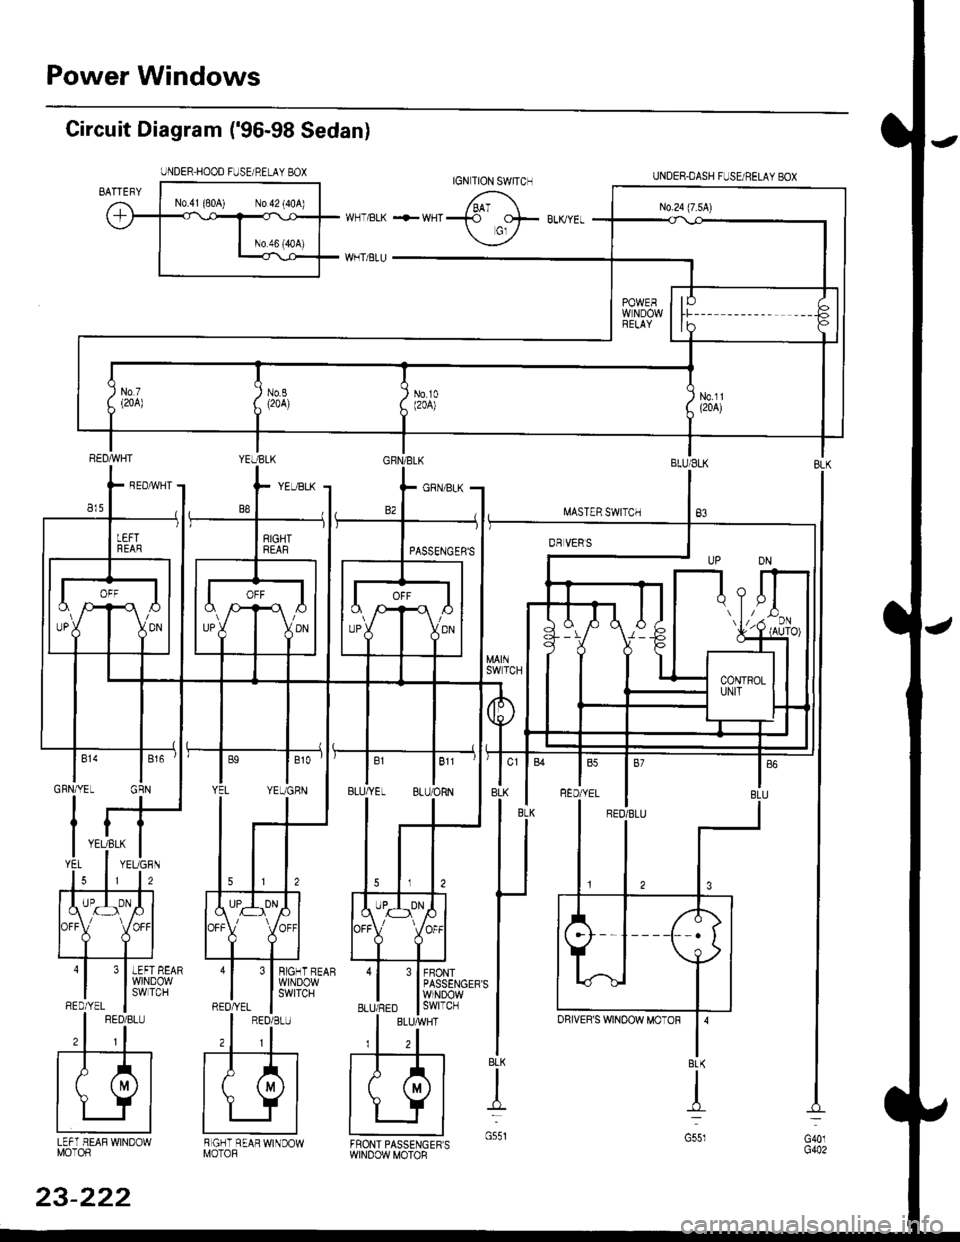 HONDA CIVIC 1996 6.G User Guide Power Windows
Circuit Diagram (96-98 Sedan)
UNDER HOOD FUSE/RELAY BOX
I.iASTER SWITCH
UNDER.DASH FUSUBELAYEOX
BLU/ELK
B3
3 I BIGHT BEAR
l$,]ilP3,y
FBONTPASSENGERSWINDOWswtTcH
BLK
t
G551LEFT HEAF WI